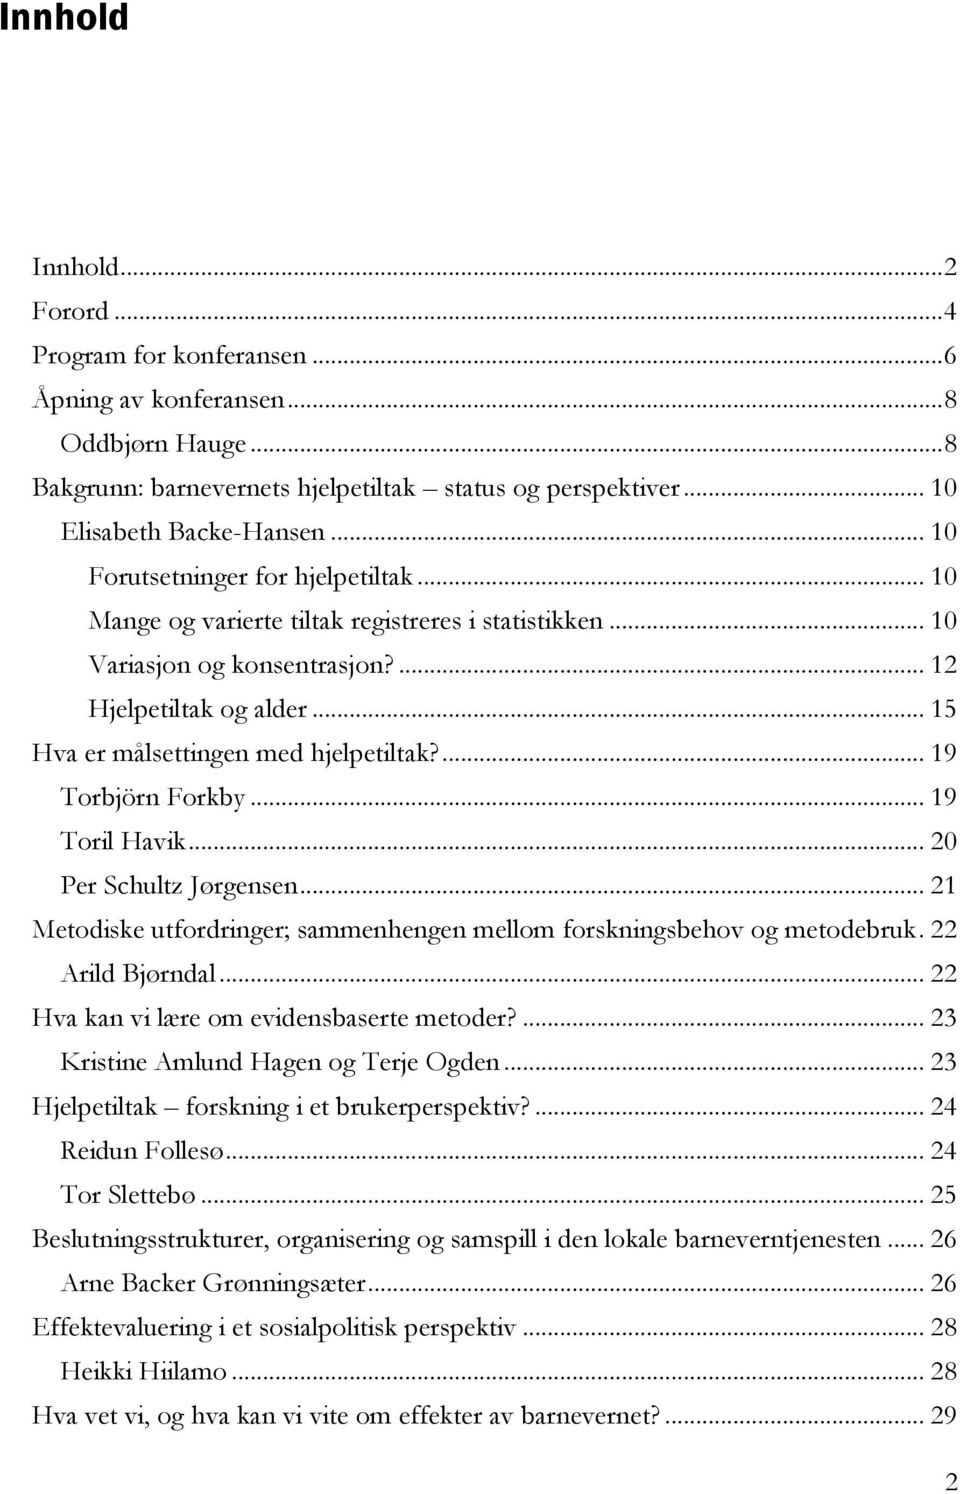 ... 19 Torbjörn Forkby... 19 Toril Havik... 20 Per Schultz Jørgensen... 21 Metodiske utfordringer; sammenhengen mellom forskningsbehov og metodebruk. 22 Arild Bjørndal.